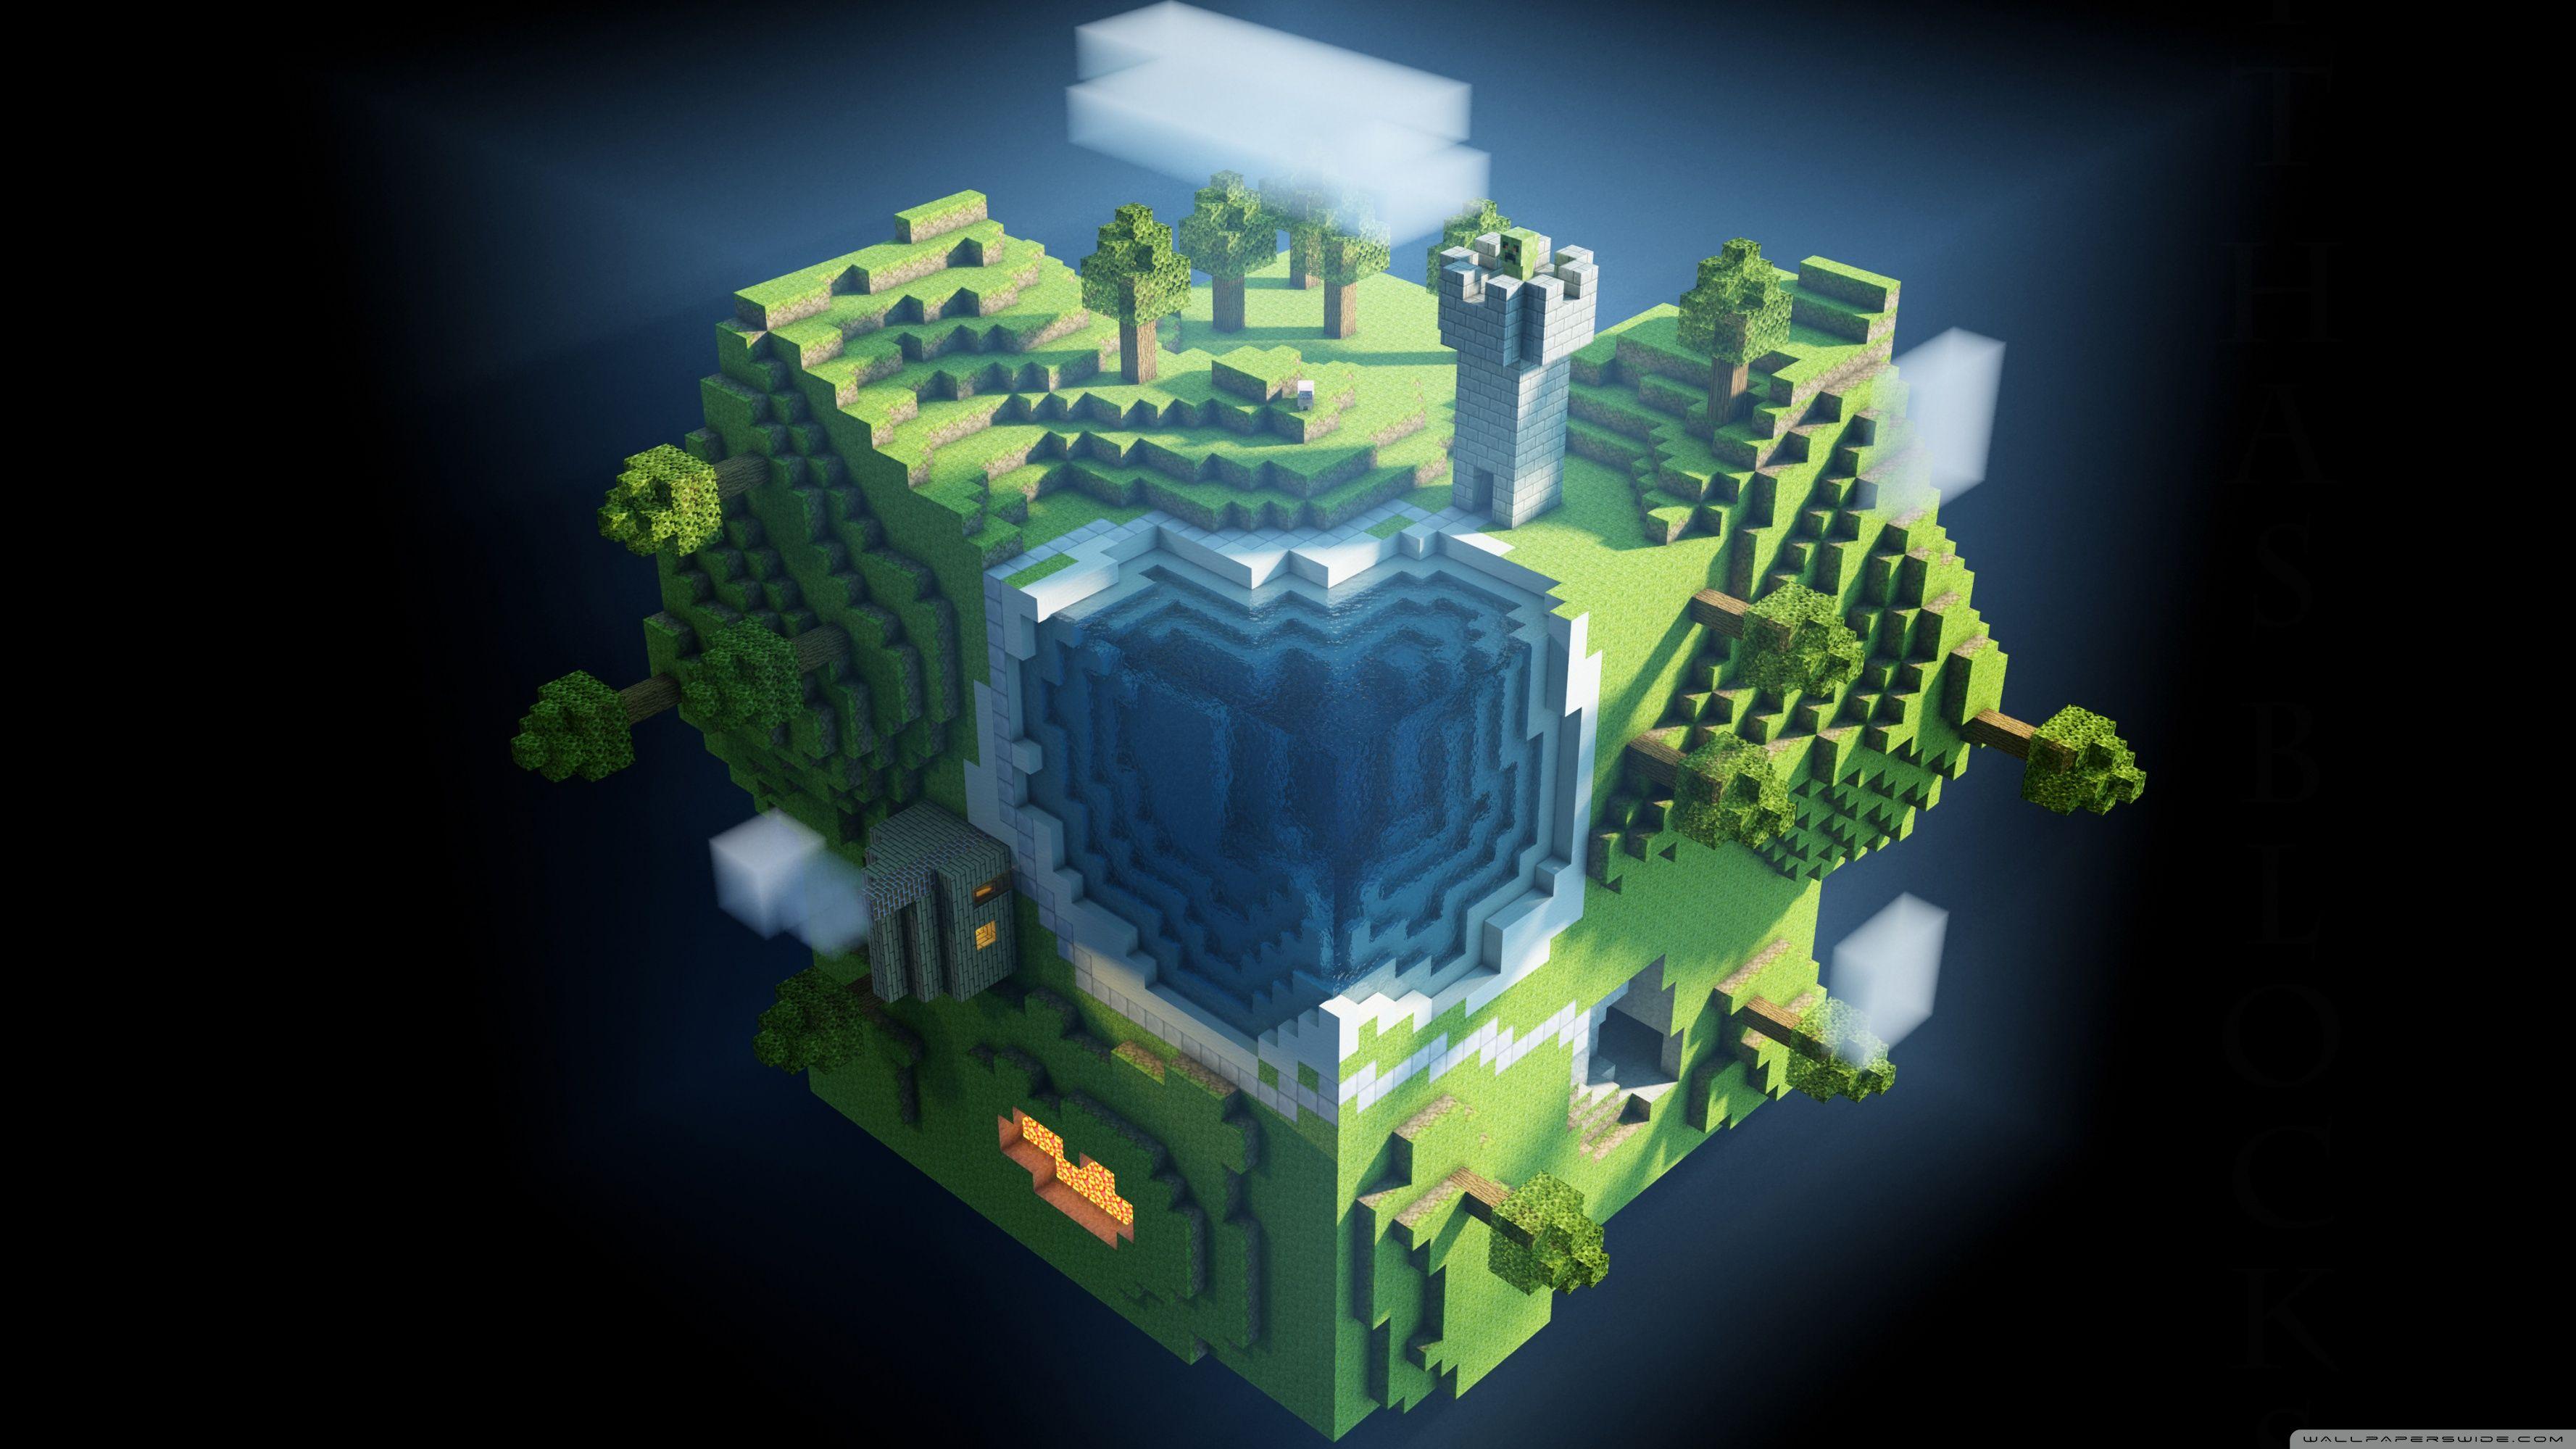 Với hình nền Minecraft, bạn có thể tự tạo ra một thế giới đầy màu sắc và độc nhất vô nhị. Cùng khám phá những tính năng đặc biệt trong game và tạo nên những hình nền đẹp mắt, đó chính là một cách thư giãn tuyệt vời cho ngày làm việc của bạn.